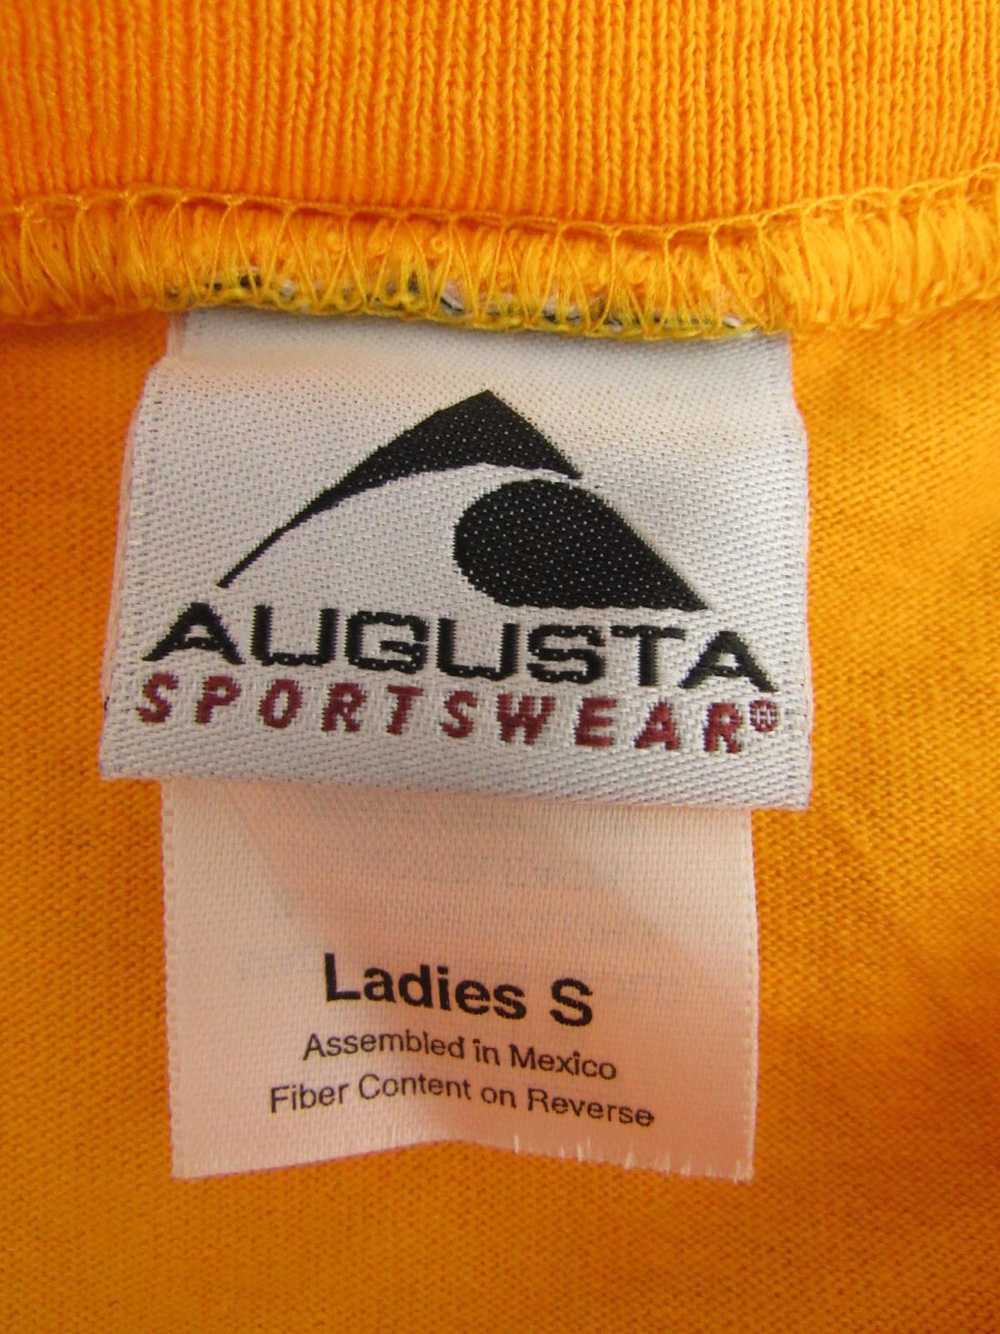 Augusta Sportswear Jersey - image 3